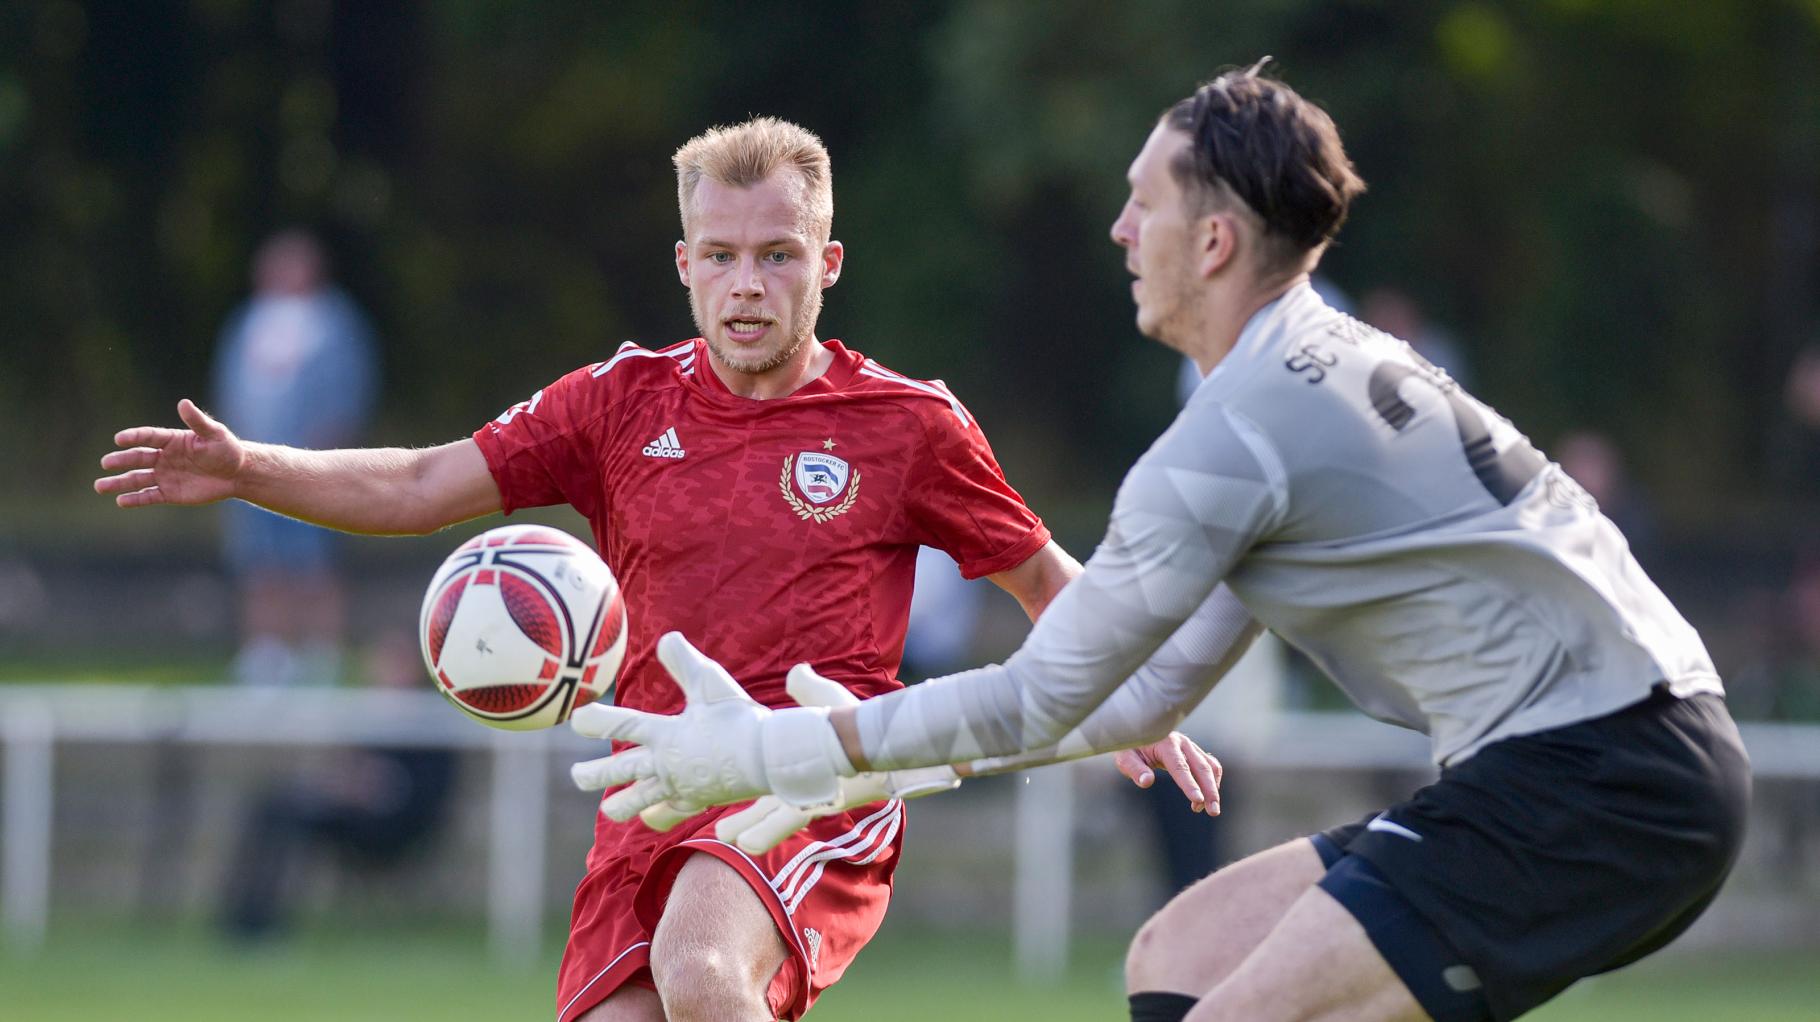 Rostocker FC bestreitet Testspiel gegen den 1. FC Lok Stendal